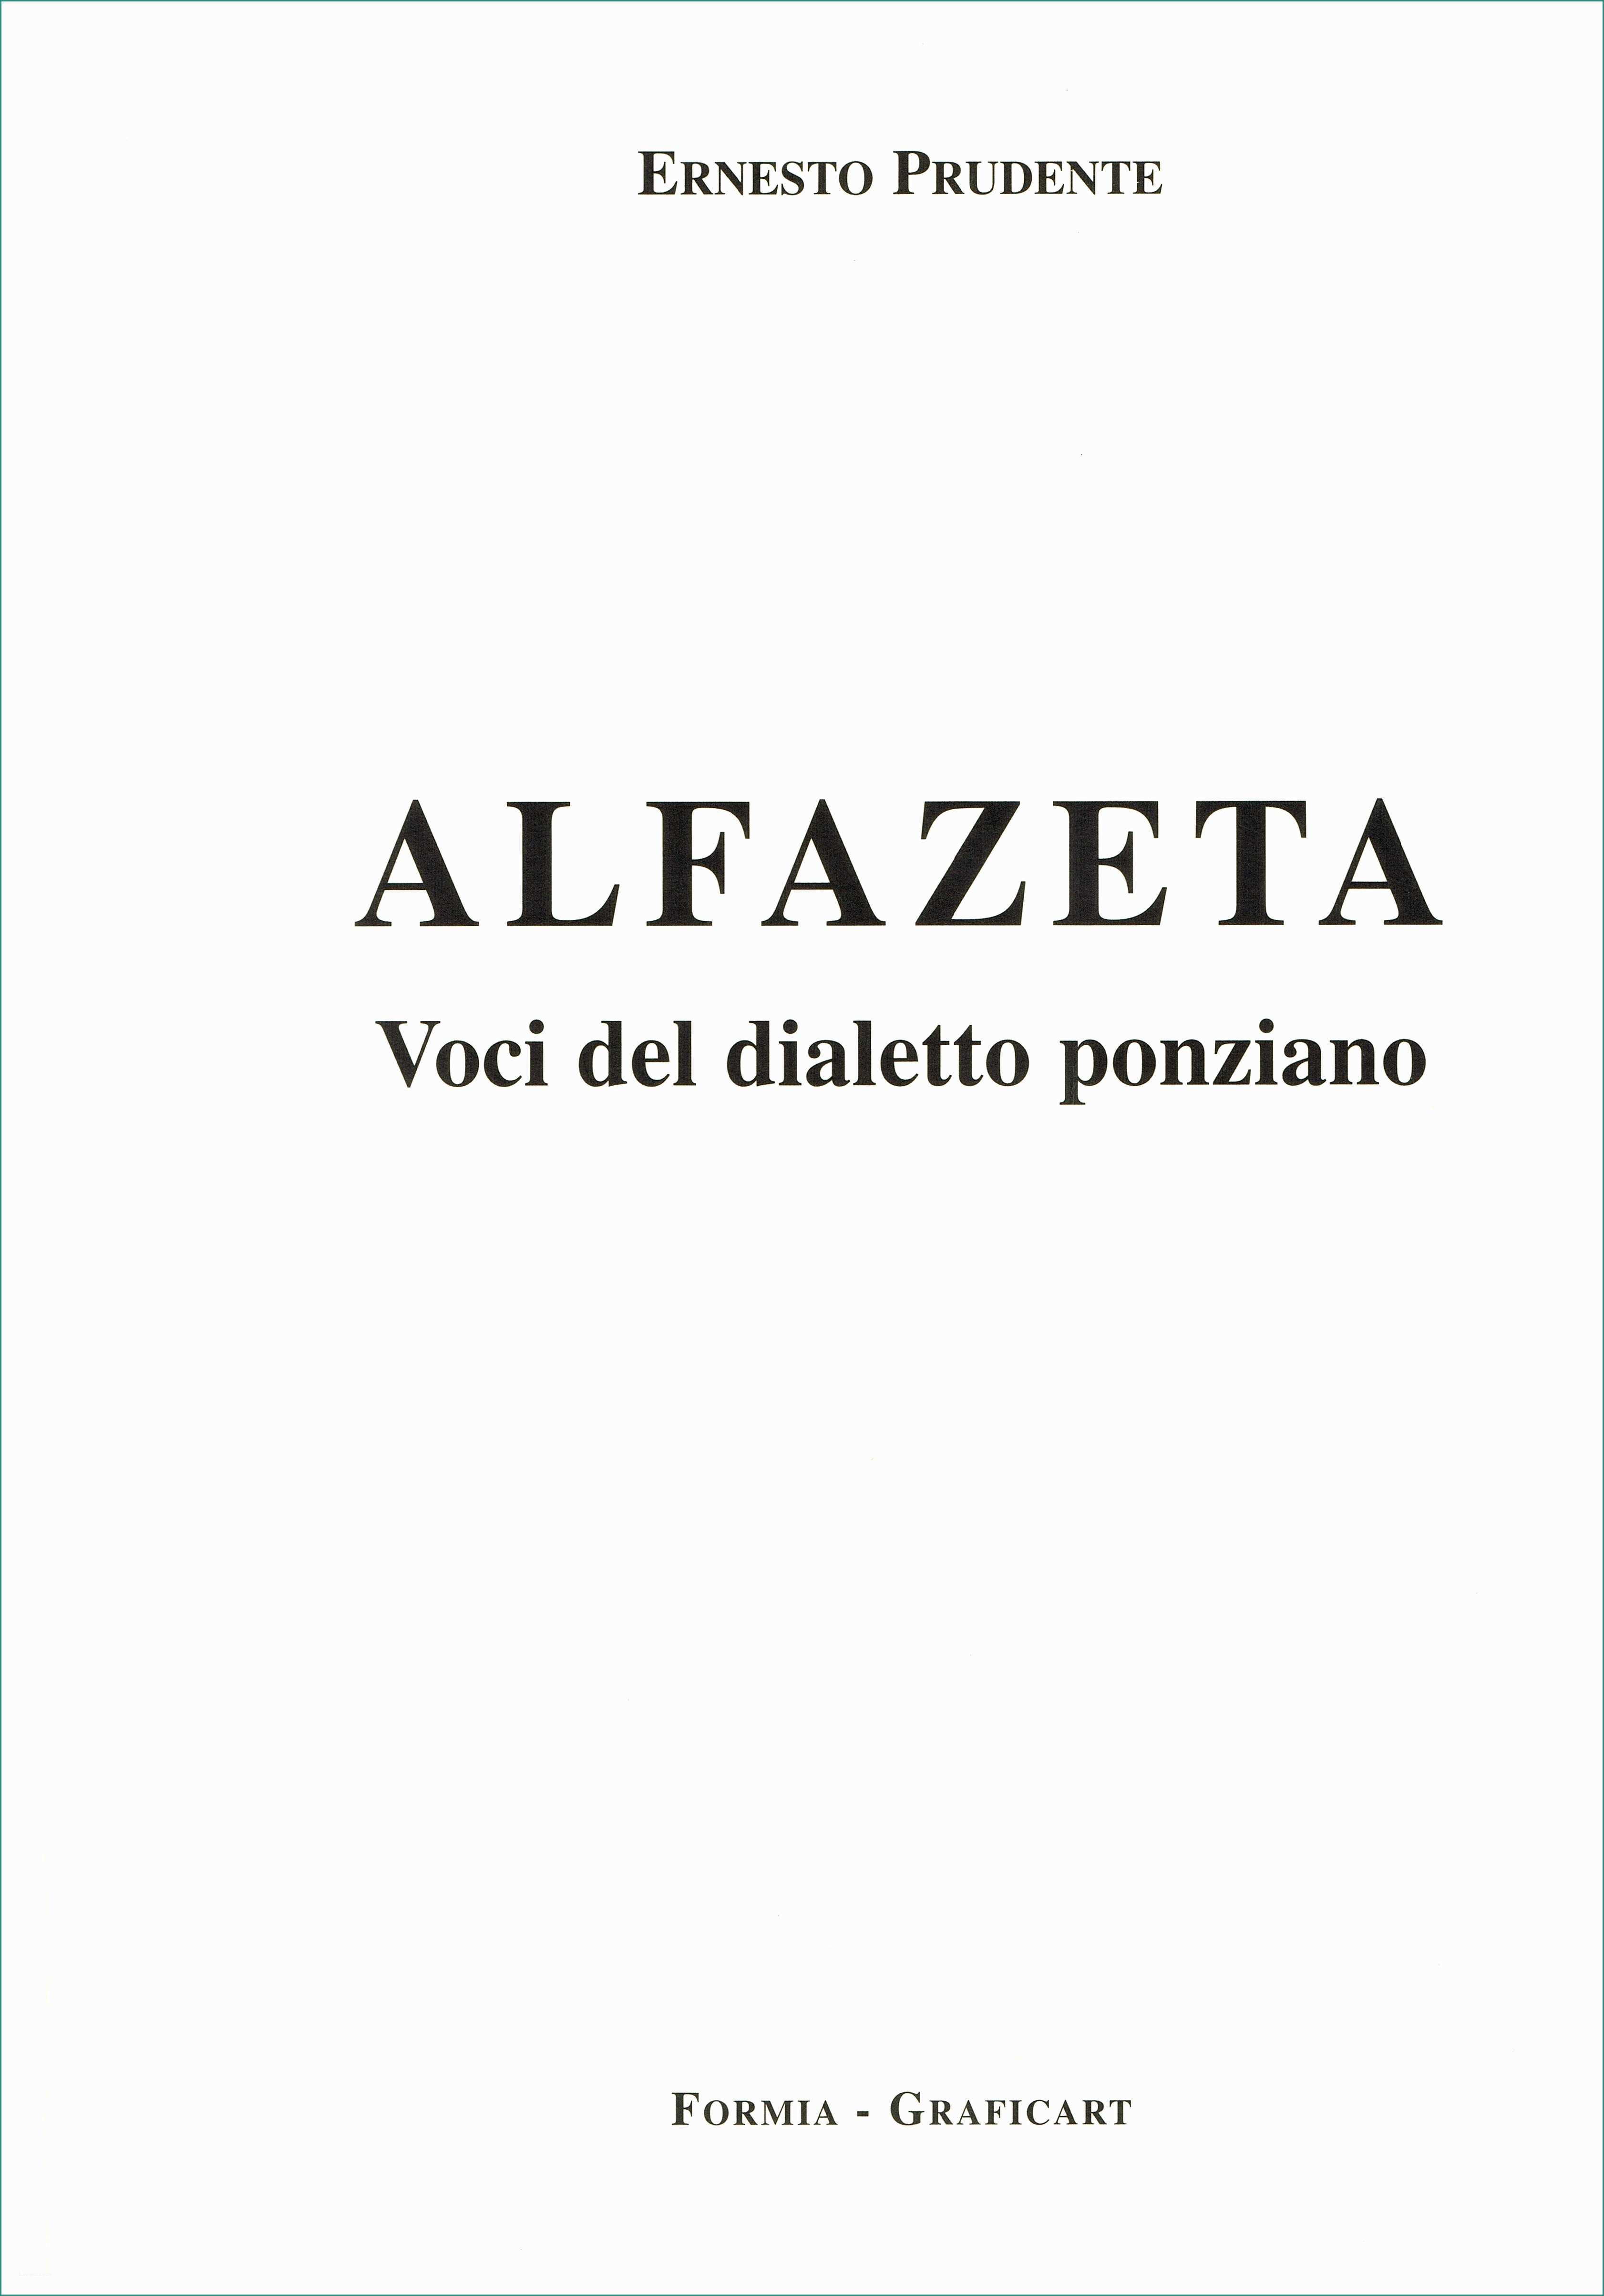 Case In Legno Su Terreno Agricolo E Alfazeta” Voci Del Dialetto Ponziano 1 Ponza Racconta